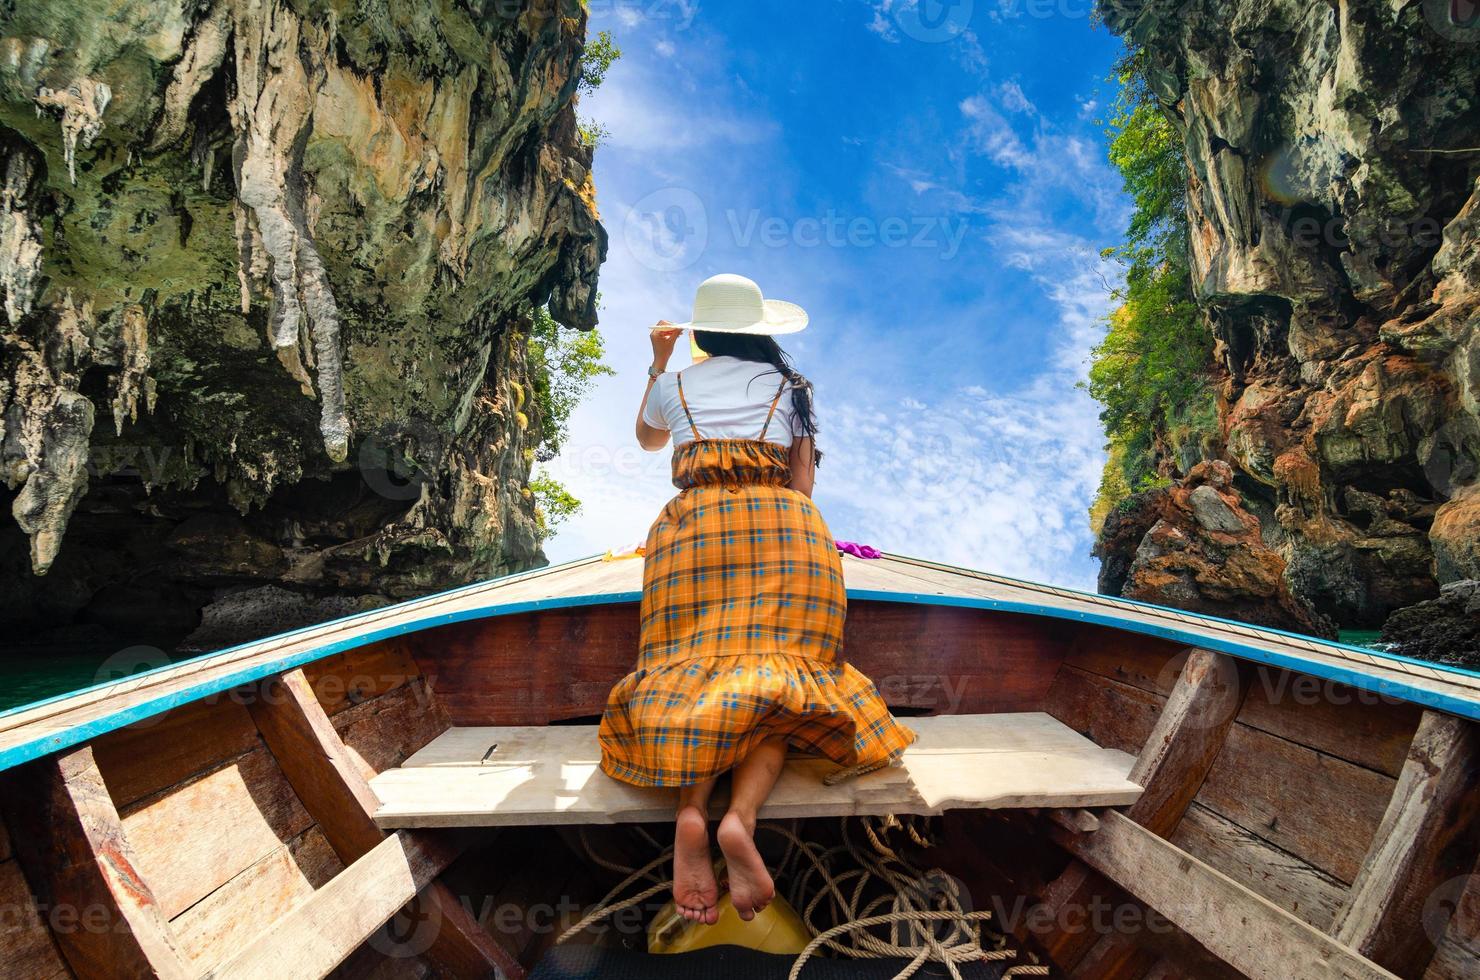 les femmes de koh kai sont heureuses sur le bateau en bois krabi thaïlande photo